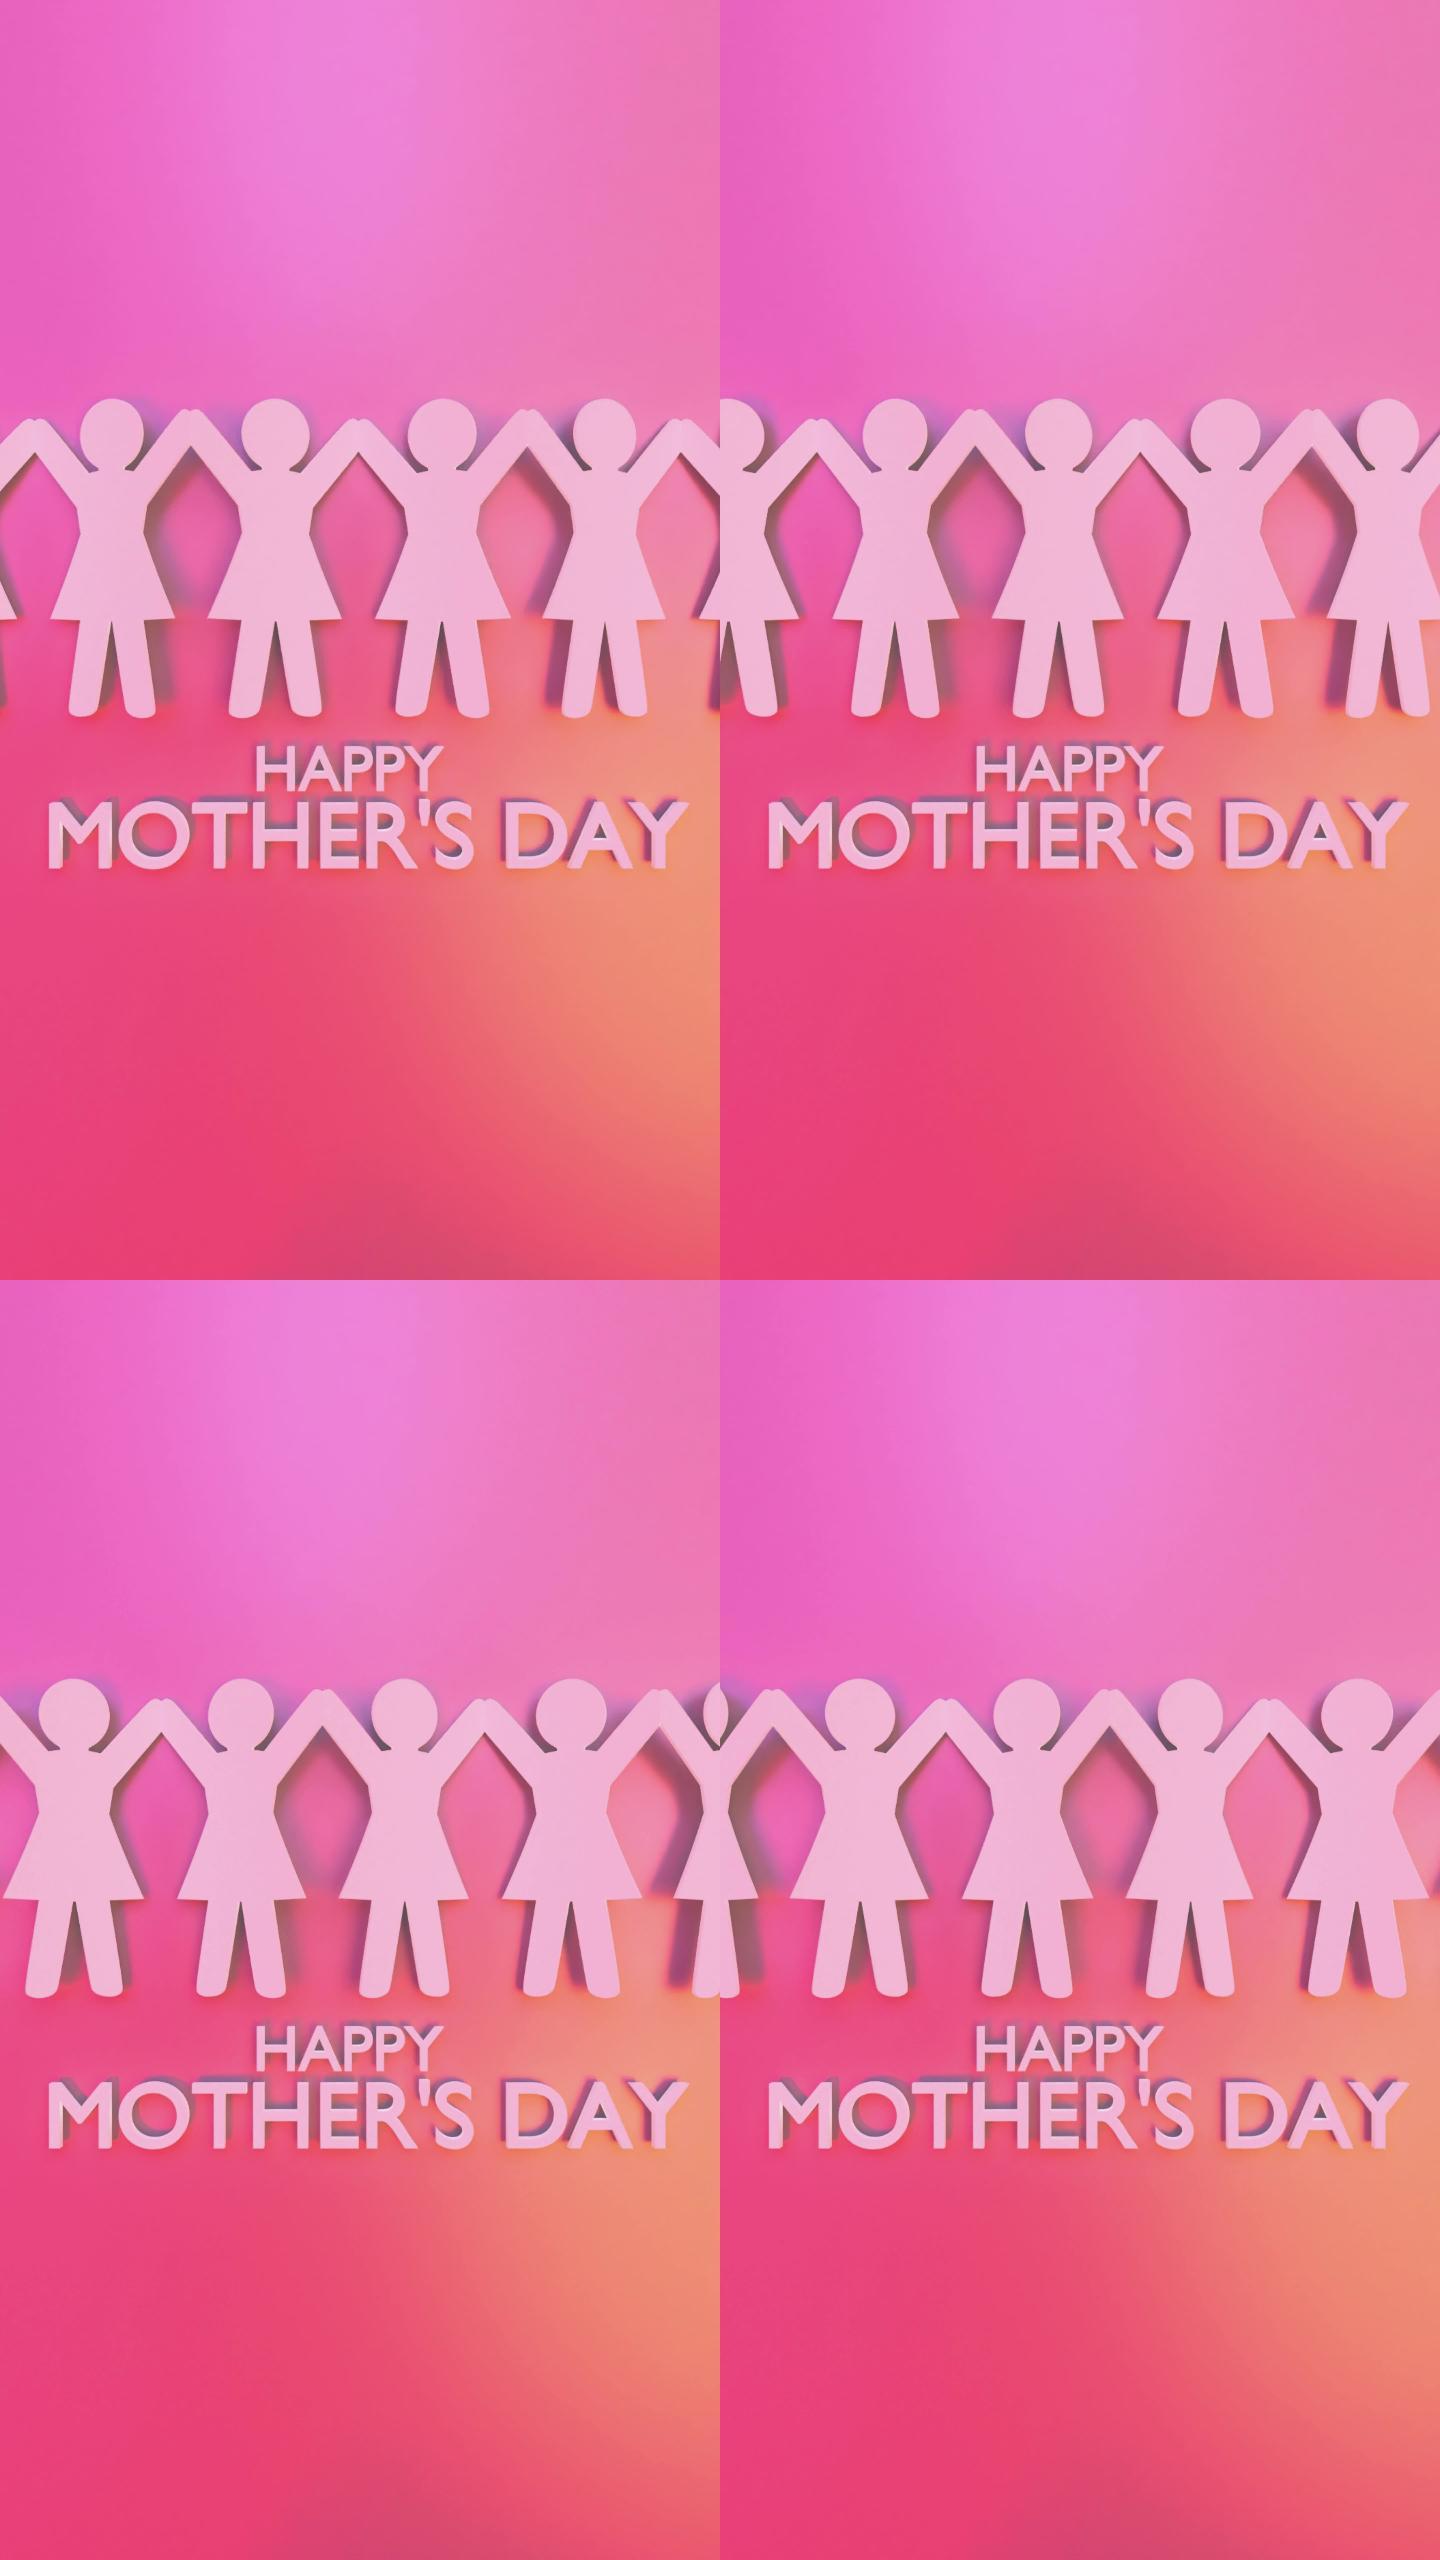 女性手拉手垂直纸折纸庆祝8个母亲节，分辨率为4K